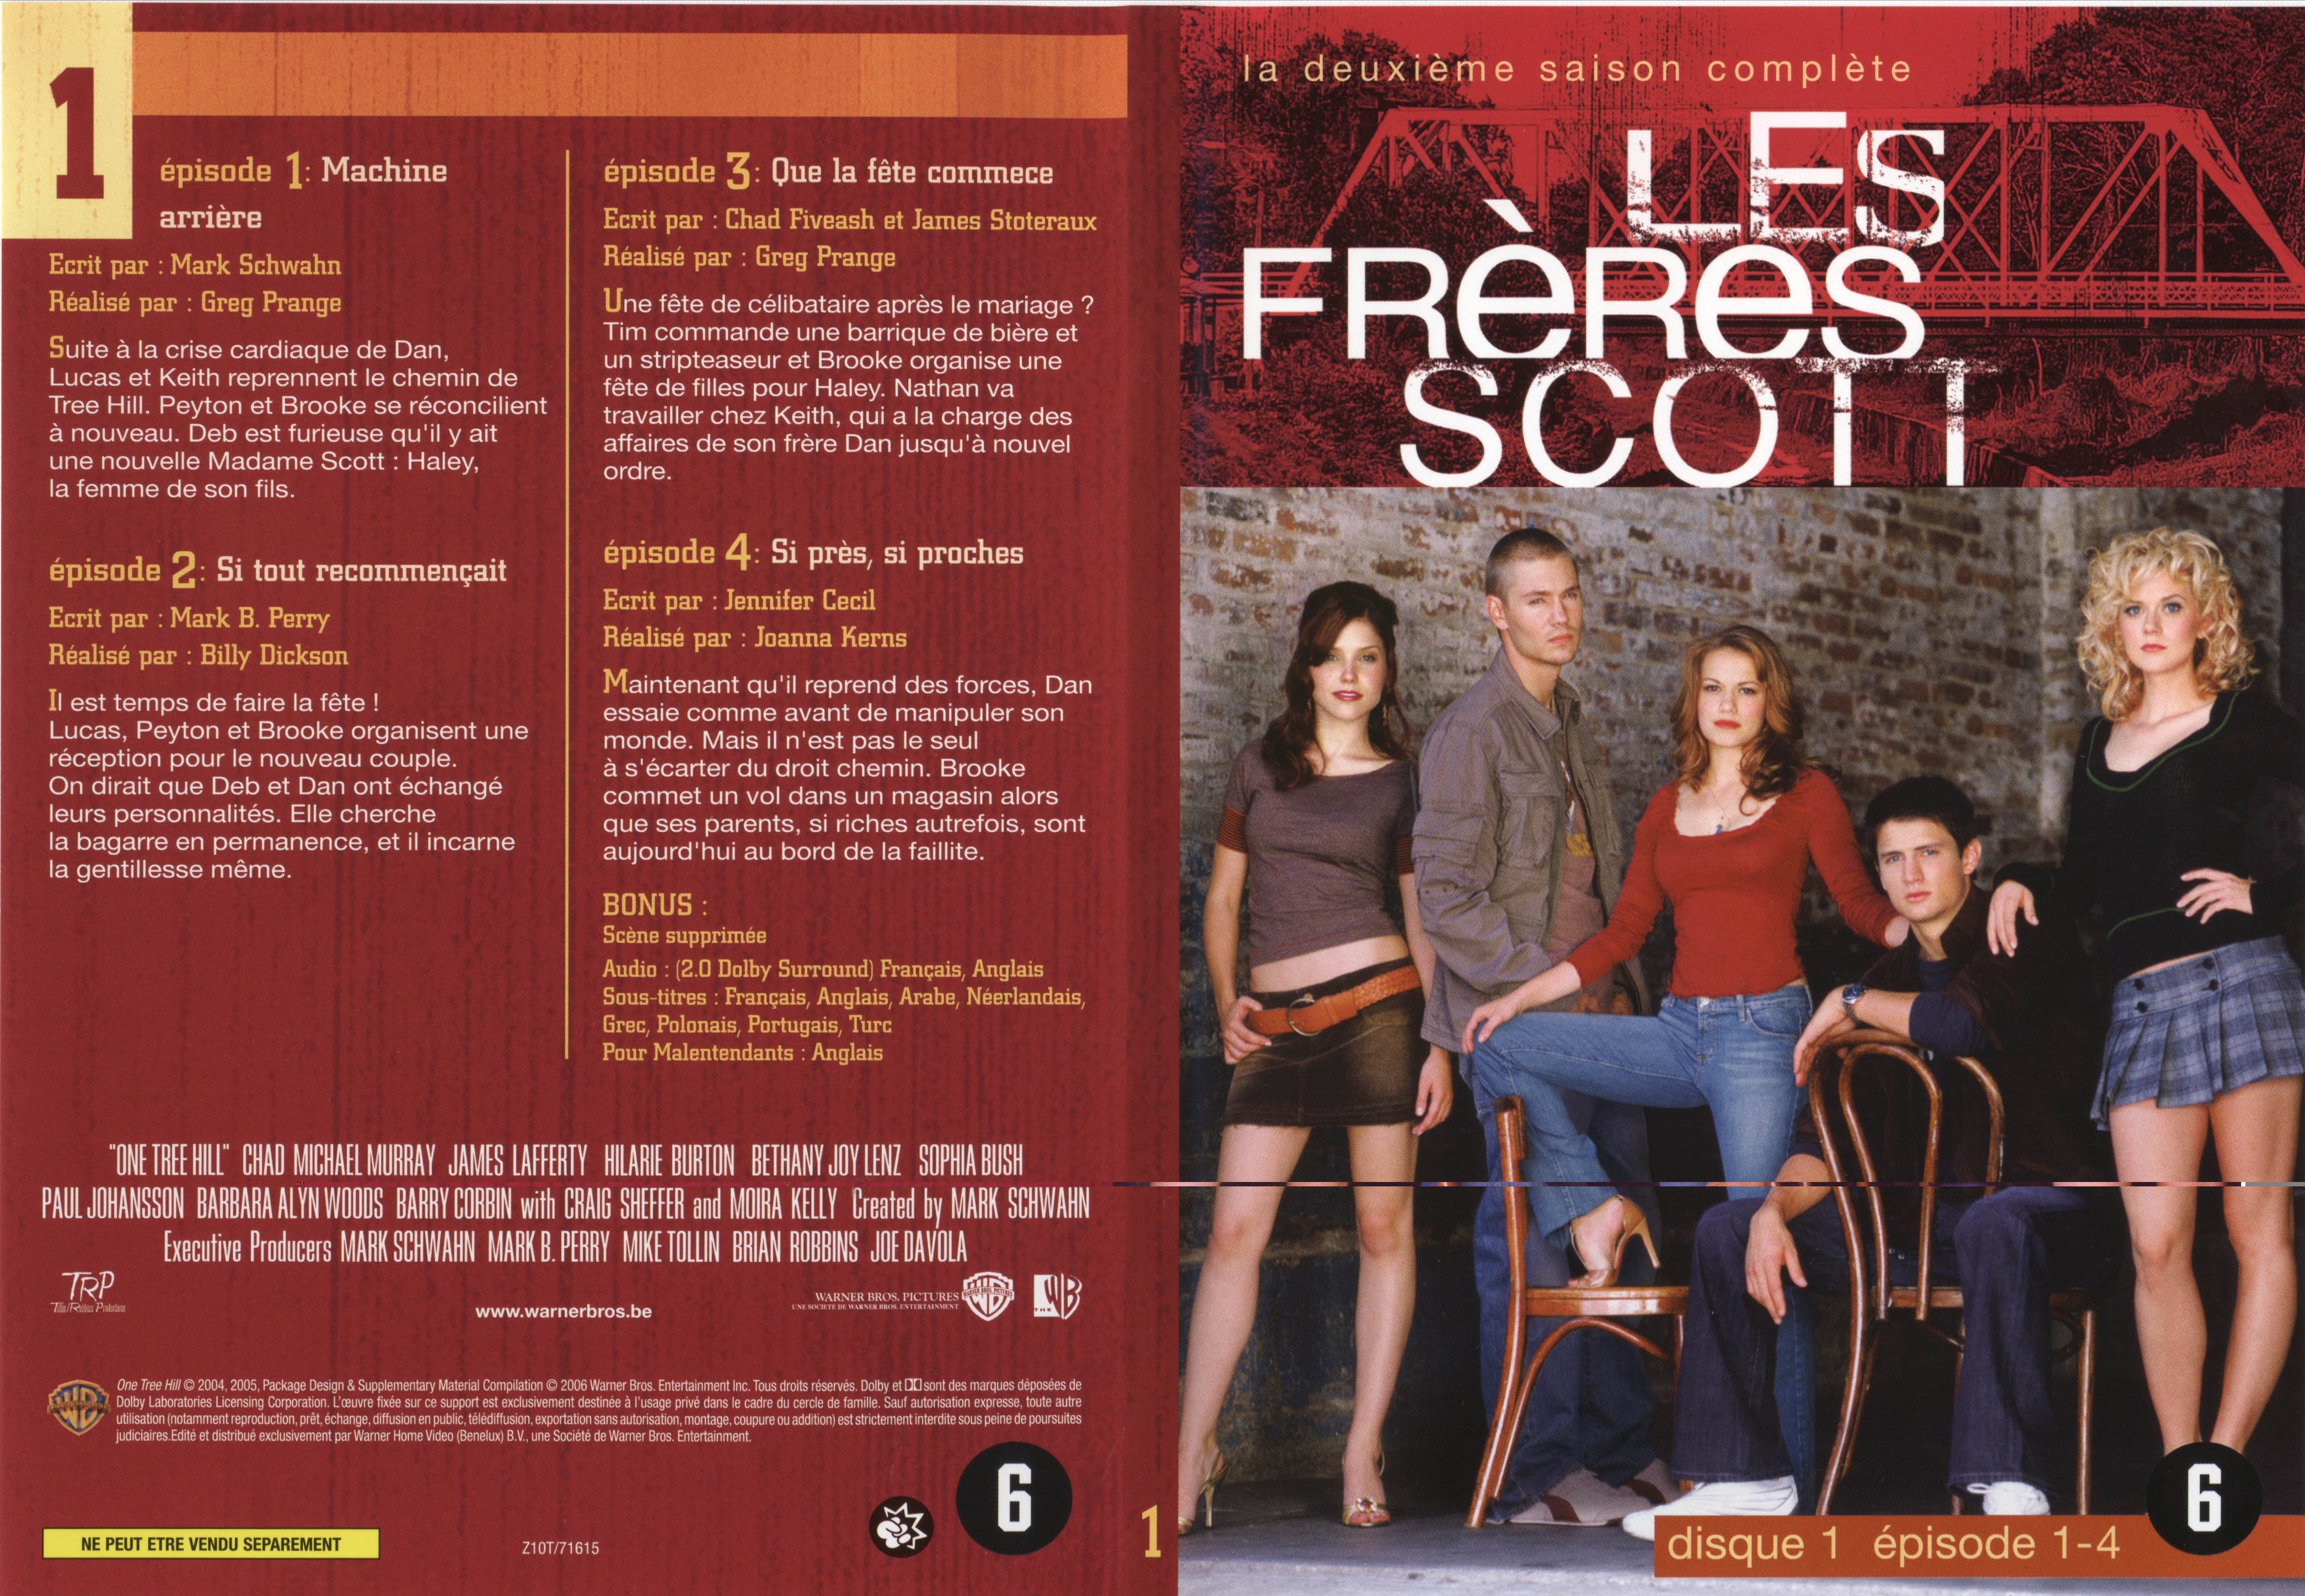 Jaquette DVD Les frres Scott Saison 2 dvd 1